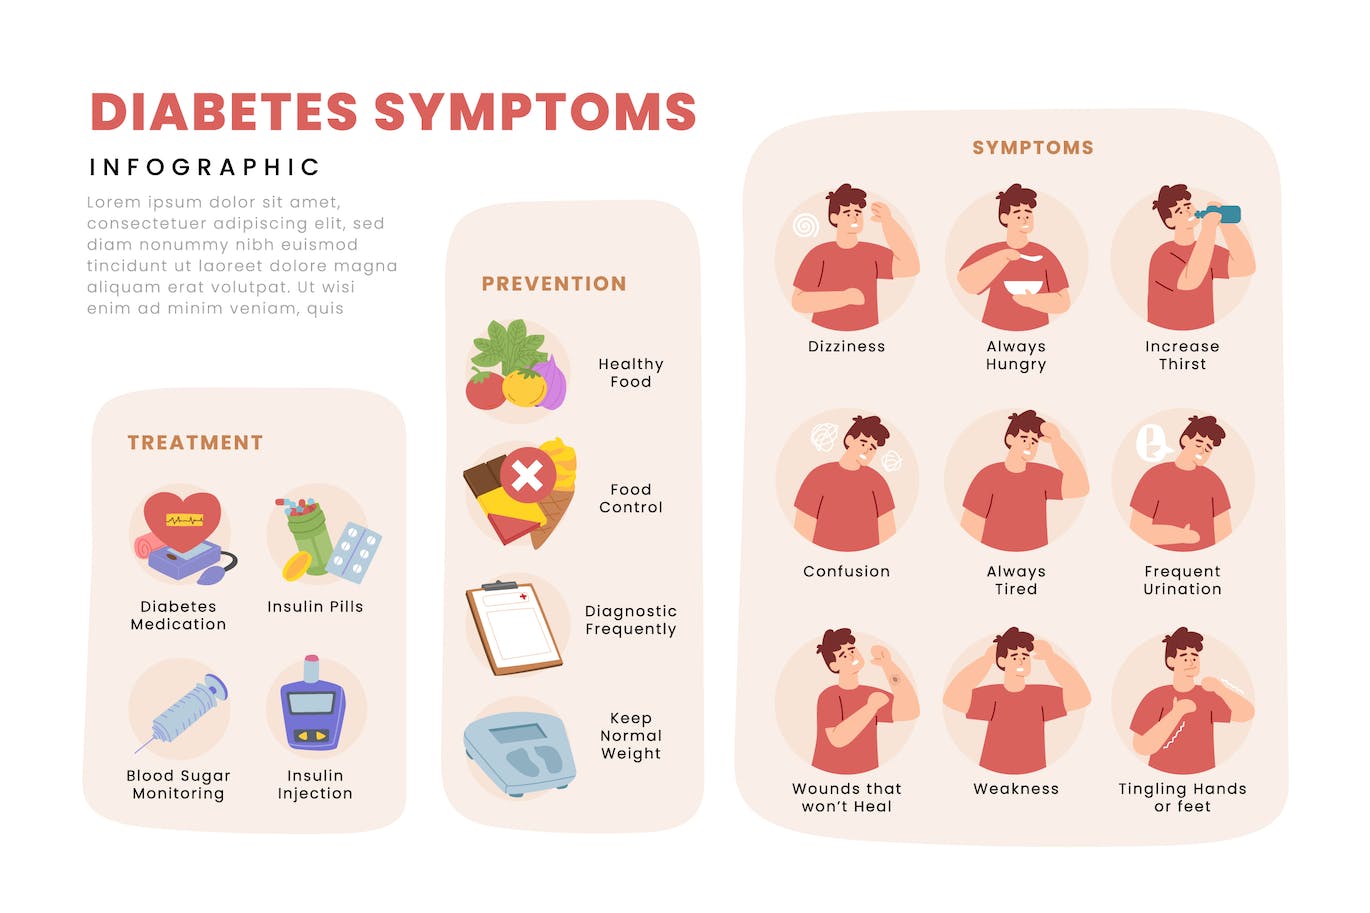 糖尿病症状信息手册图表模板 Diabetes Symptoms Infographic Brochure 幻灯图表 第1张